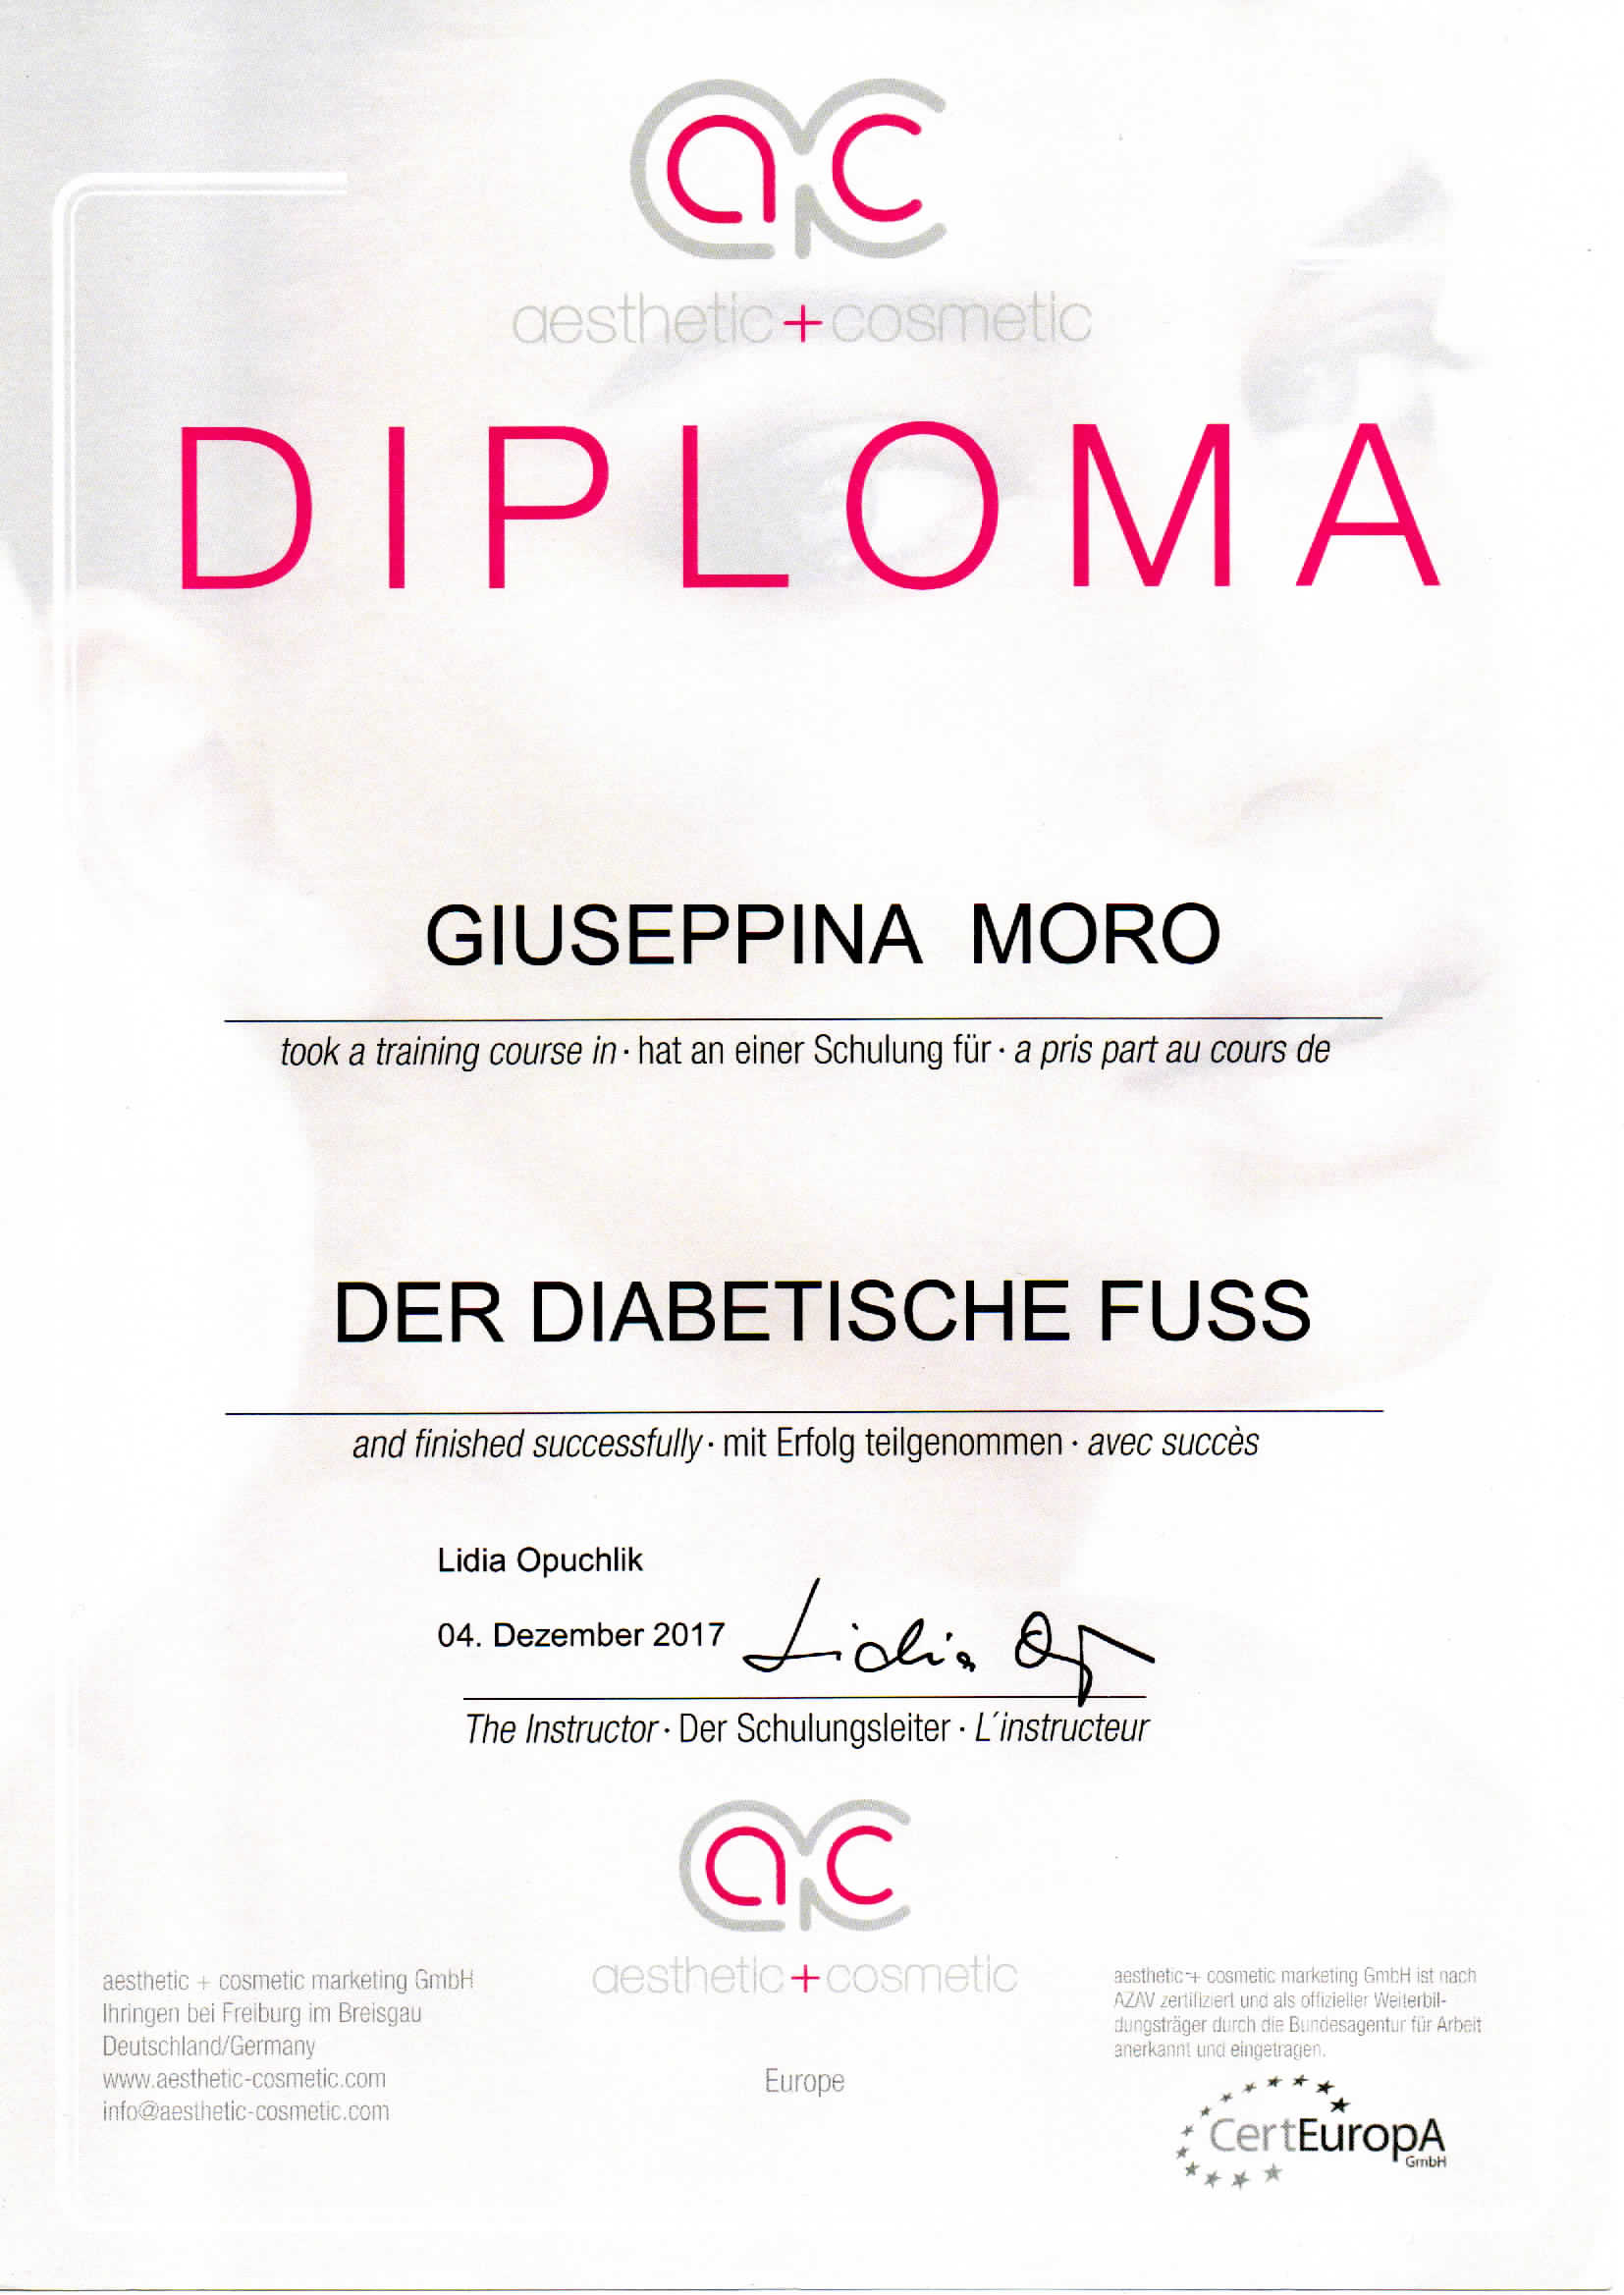 Diploma Der diabetische Fuss Giuseppina Moro